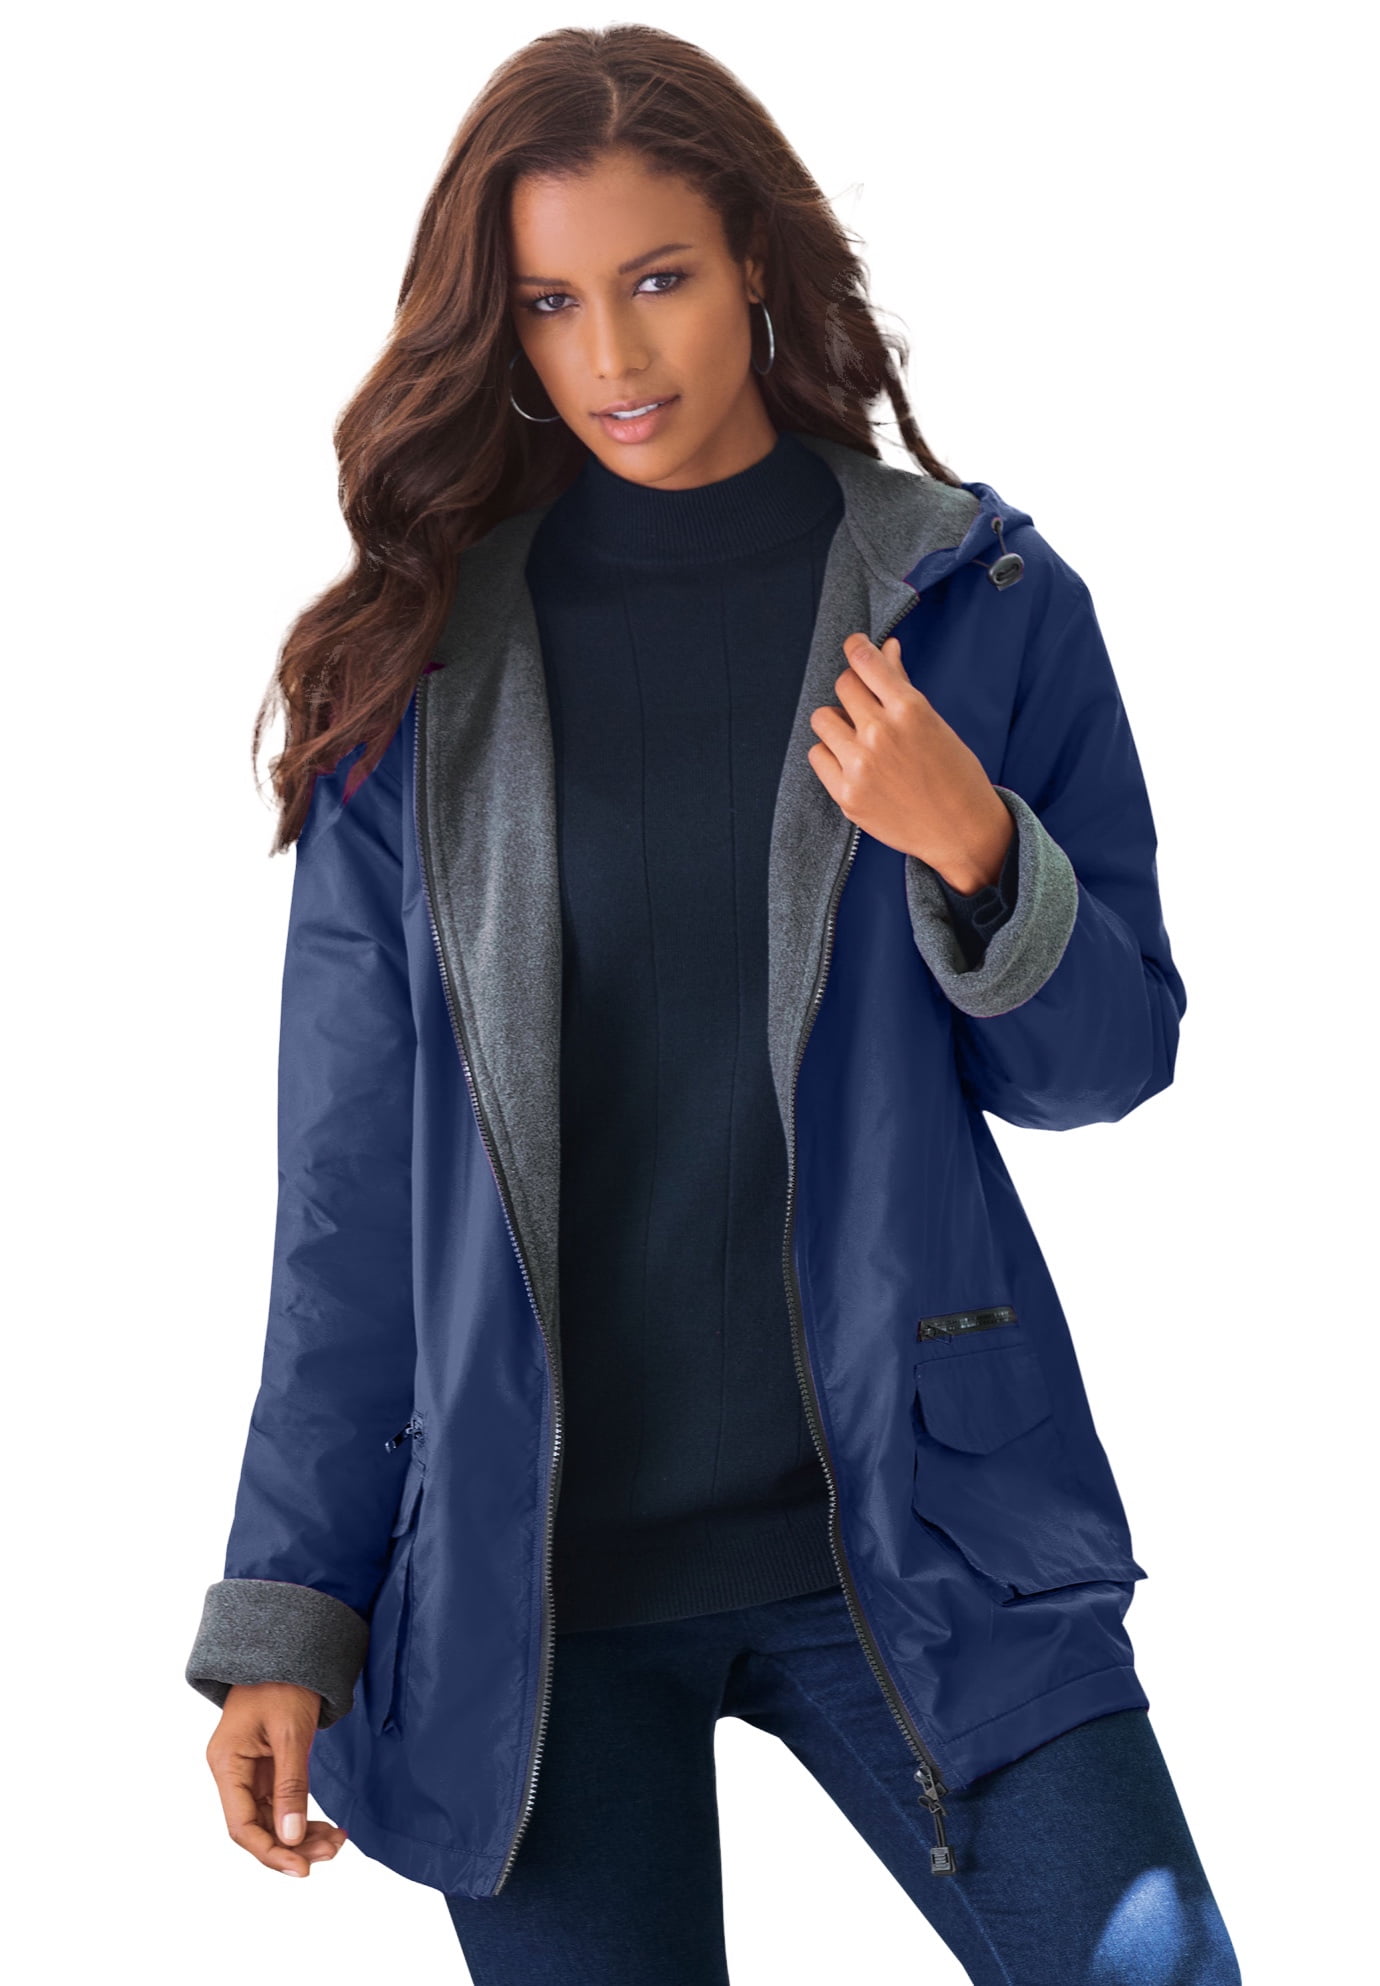 Roaman's Women's Plus Size Hooded Jacket With Fleece Lining Rain Water